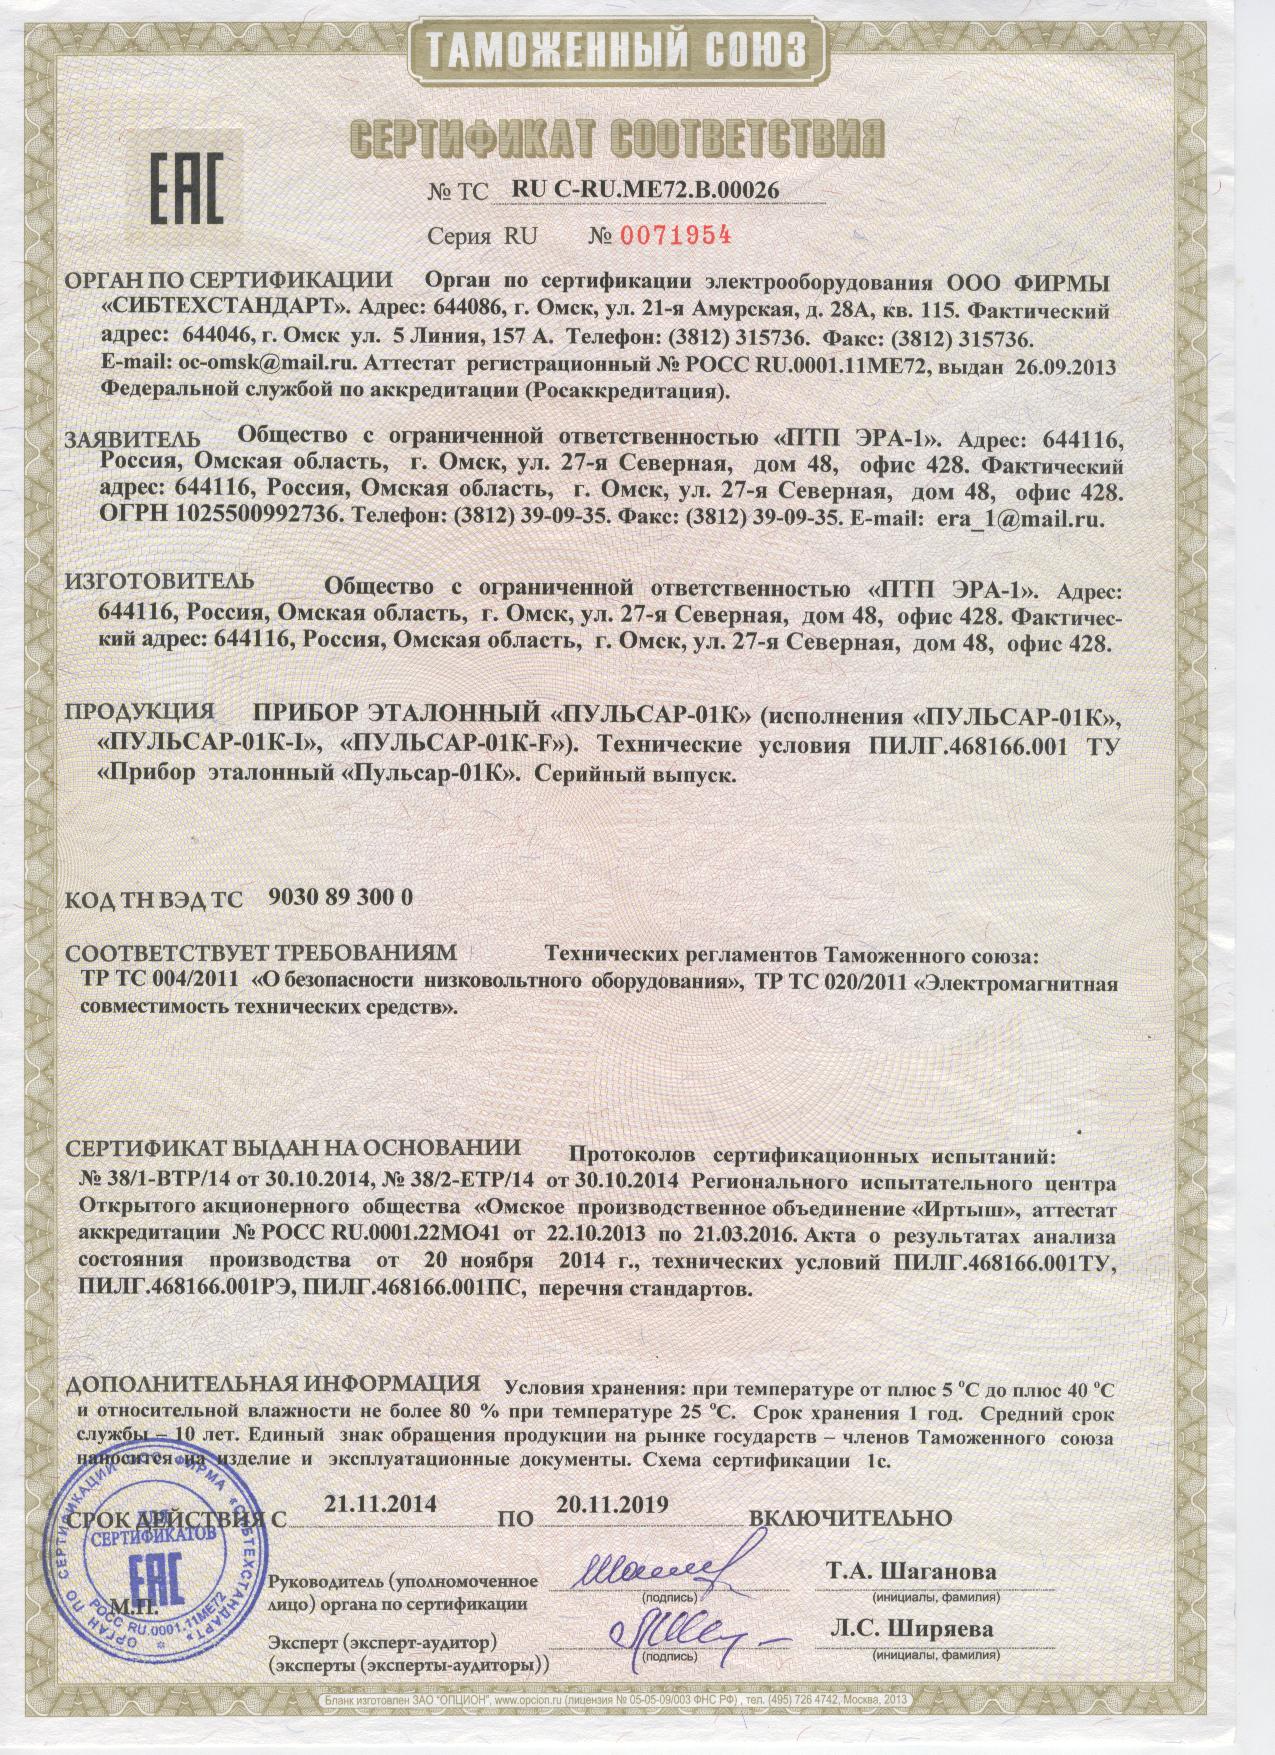 Сертификат соответствия прибора эталонного Пульсар-01К